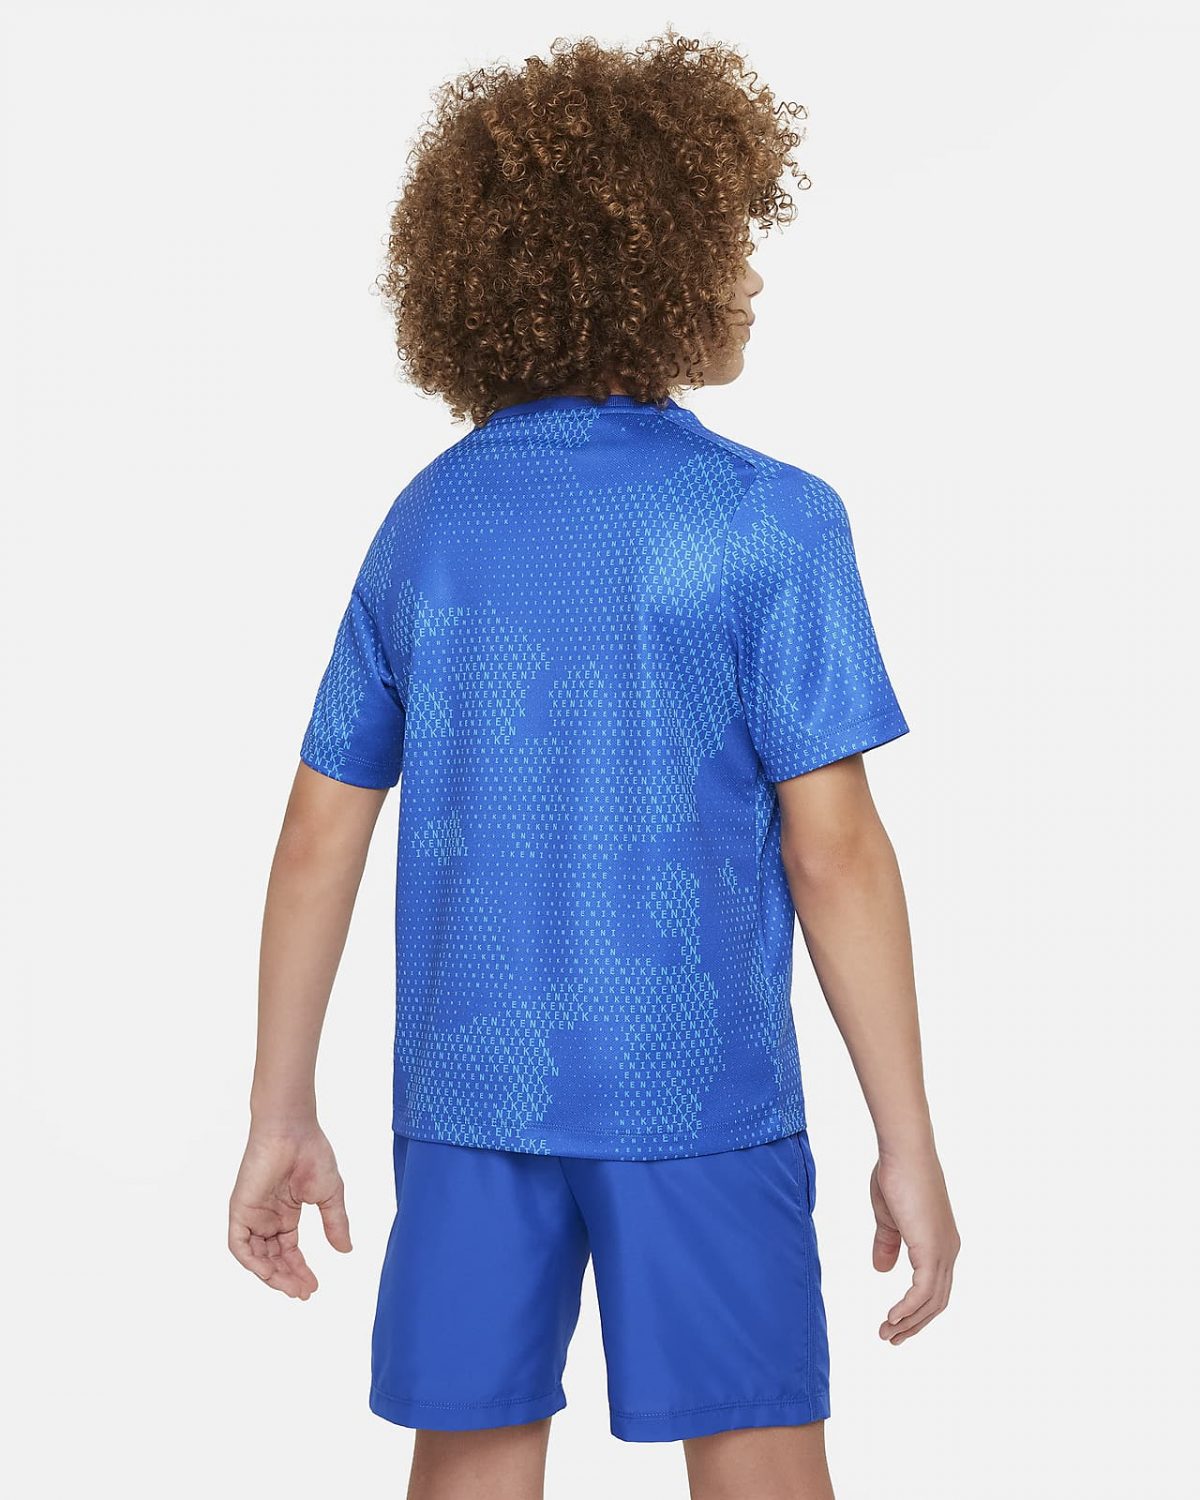 Детская рубашка Nike Multi белая фотография